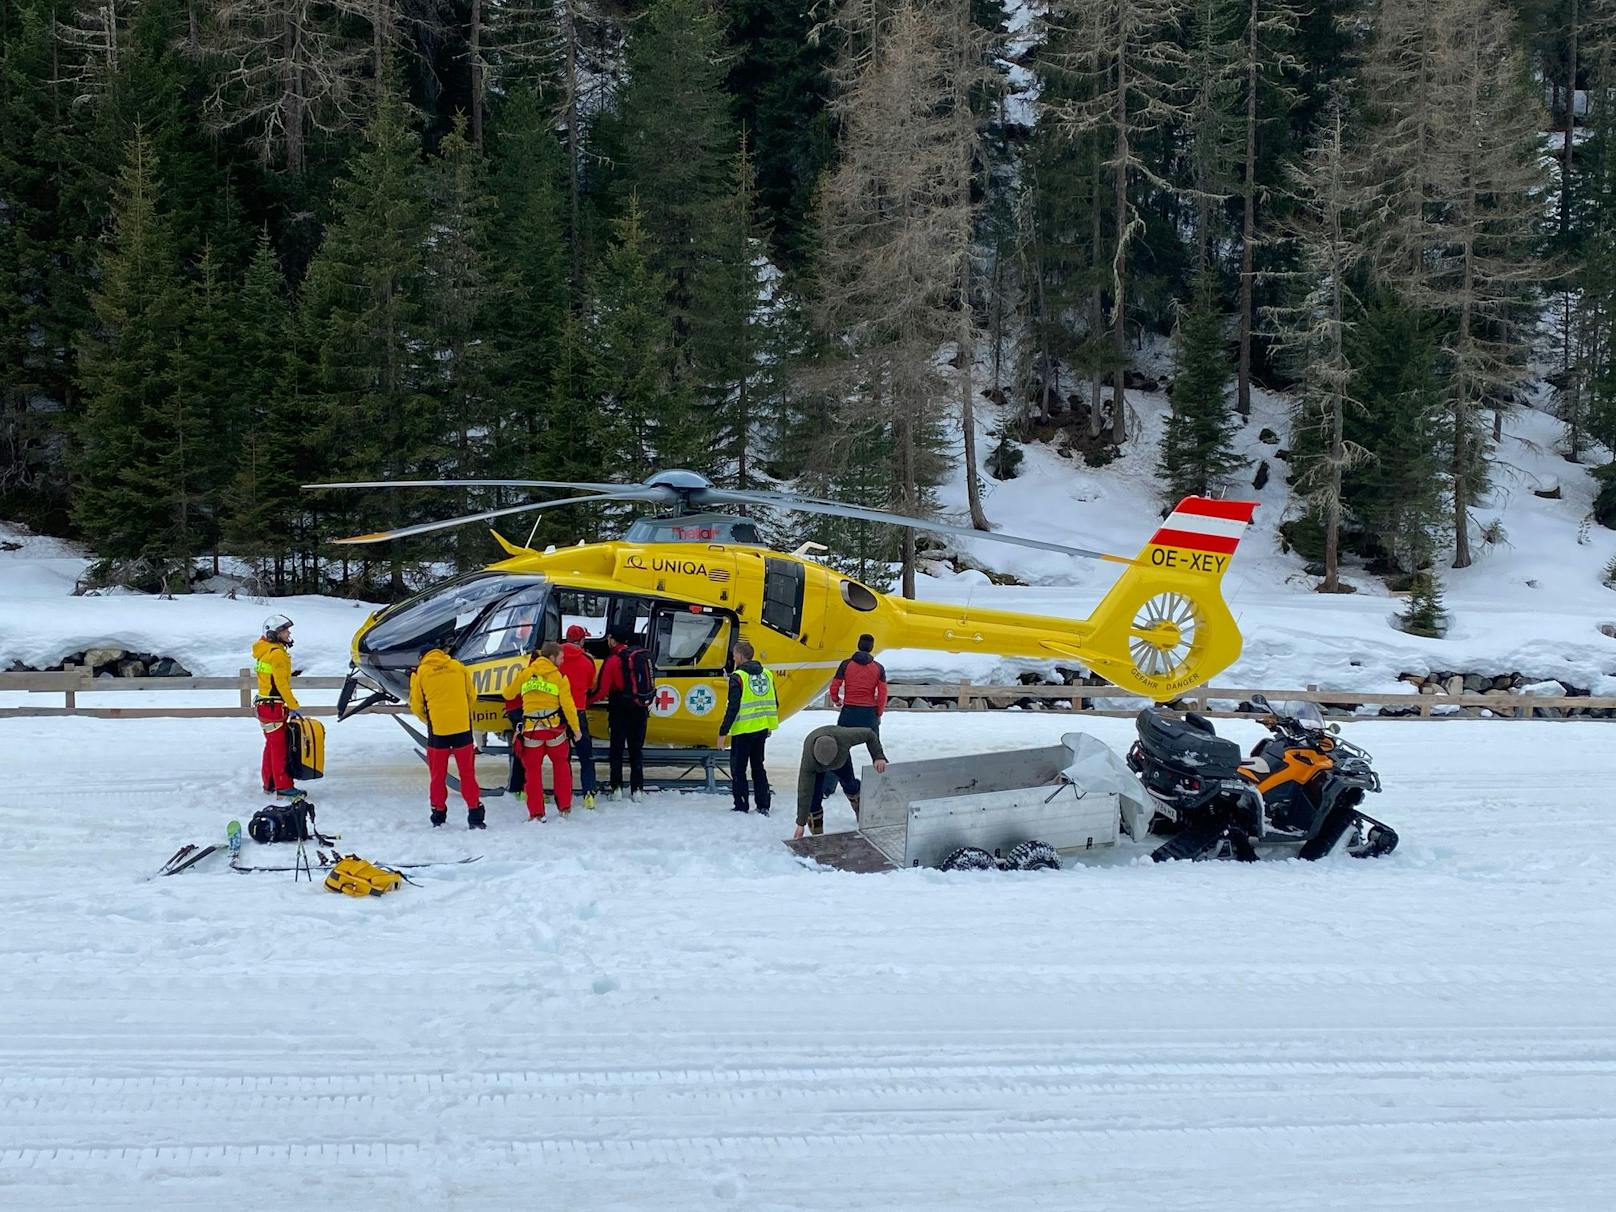 Alpinist (63) stirbt nach schweren Sturz auf Abfahrt